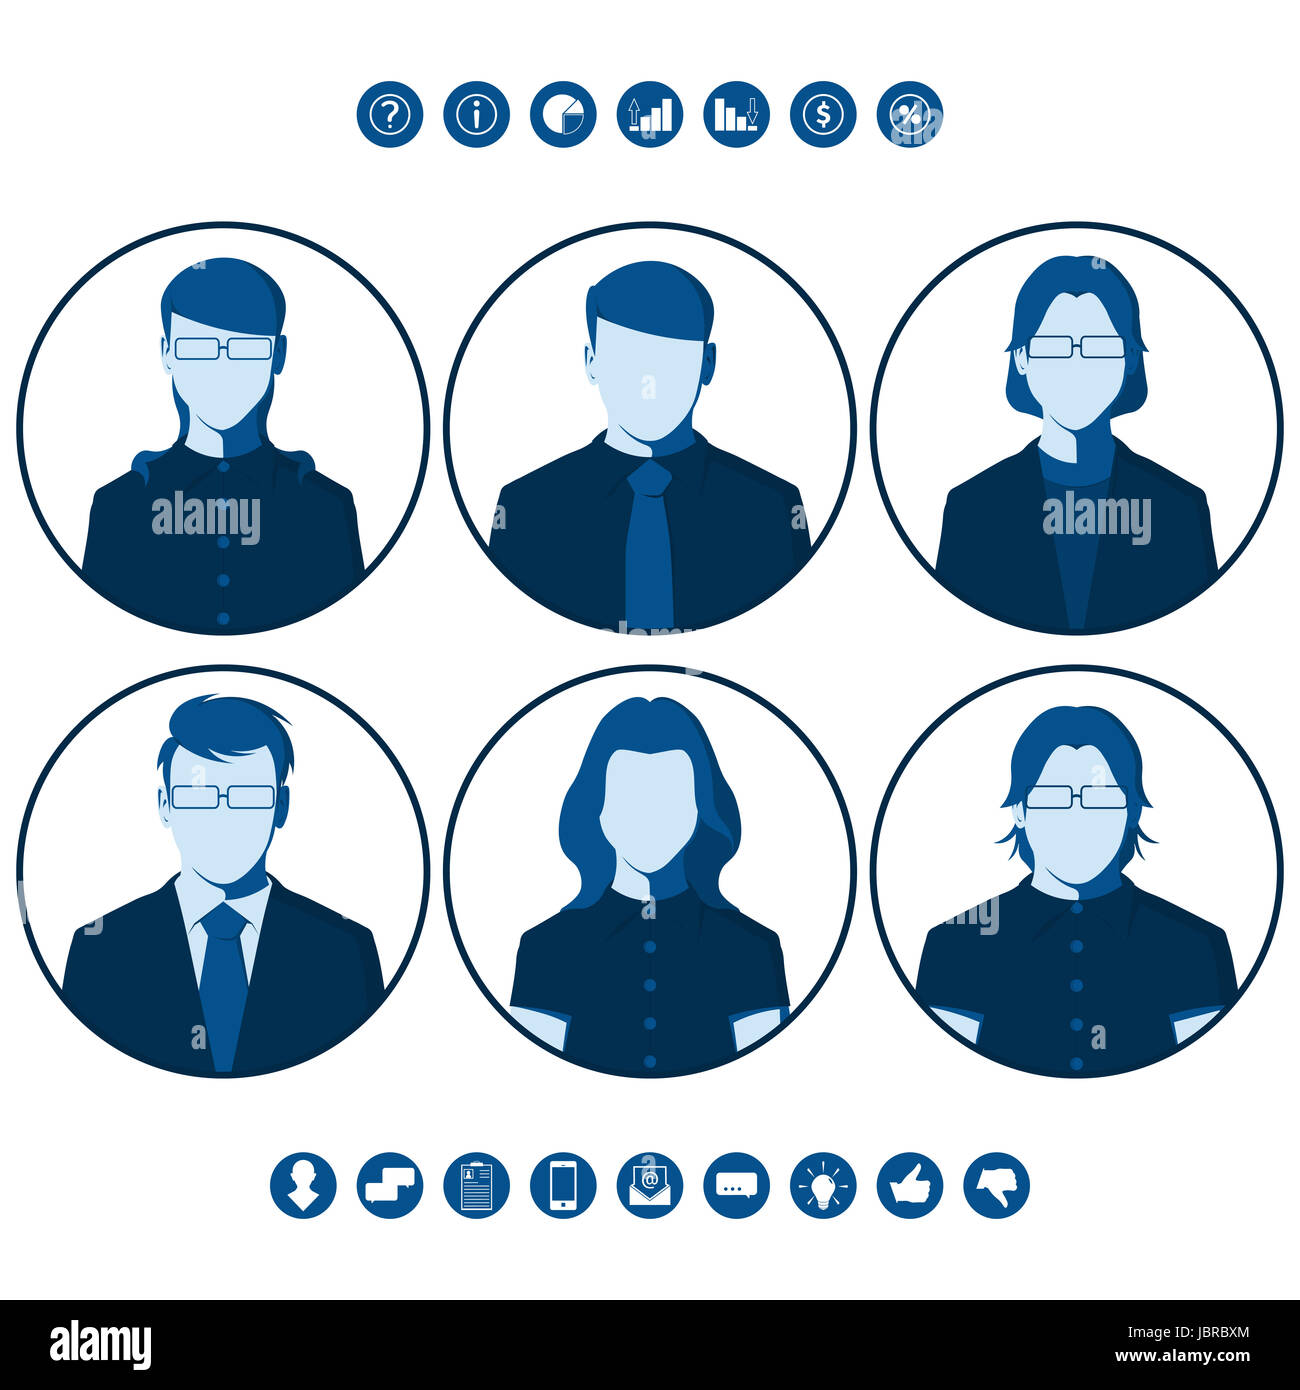 Flachen Silhouetten von Geschäftsleuten für Benutzer-Profil-Bild. Runde Icons mit männlichen und weiblichen Porträts. Satz von Avataren. Stockfoto